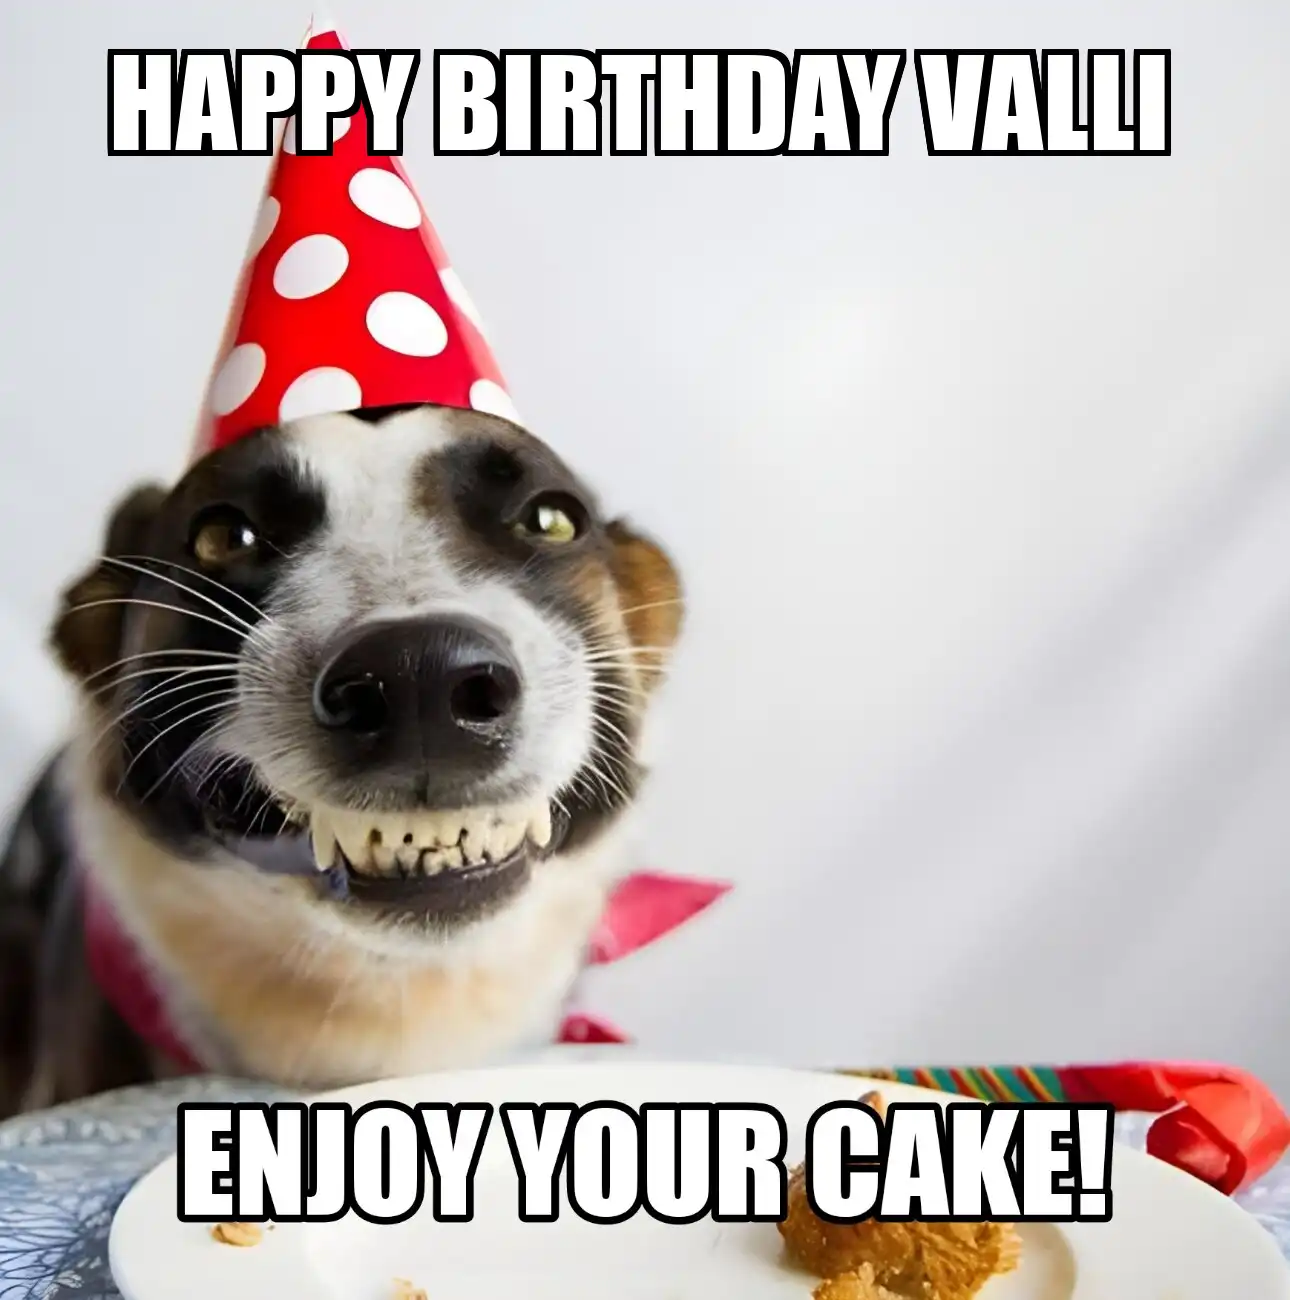 Happy Birthday Valli Enjoy Your Cake Dog Meme